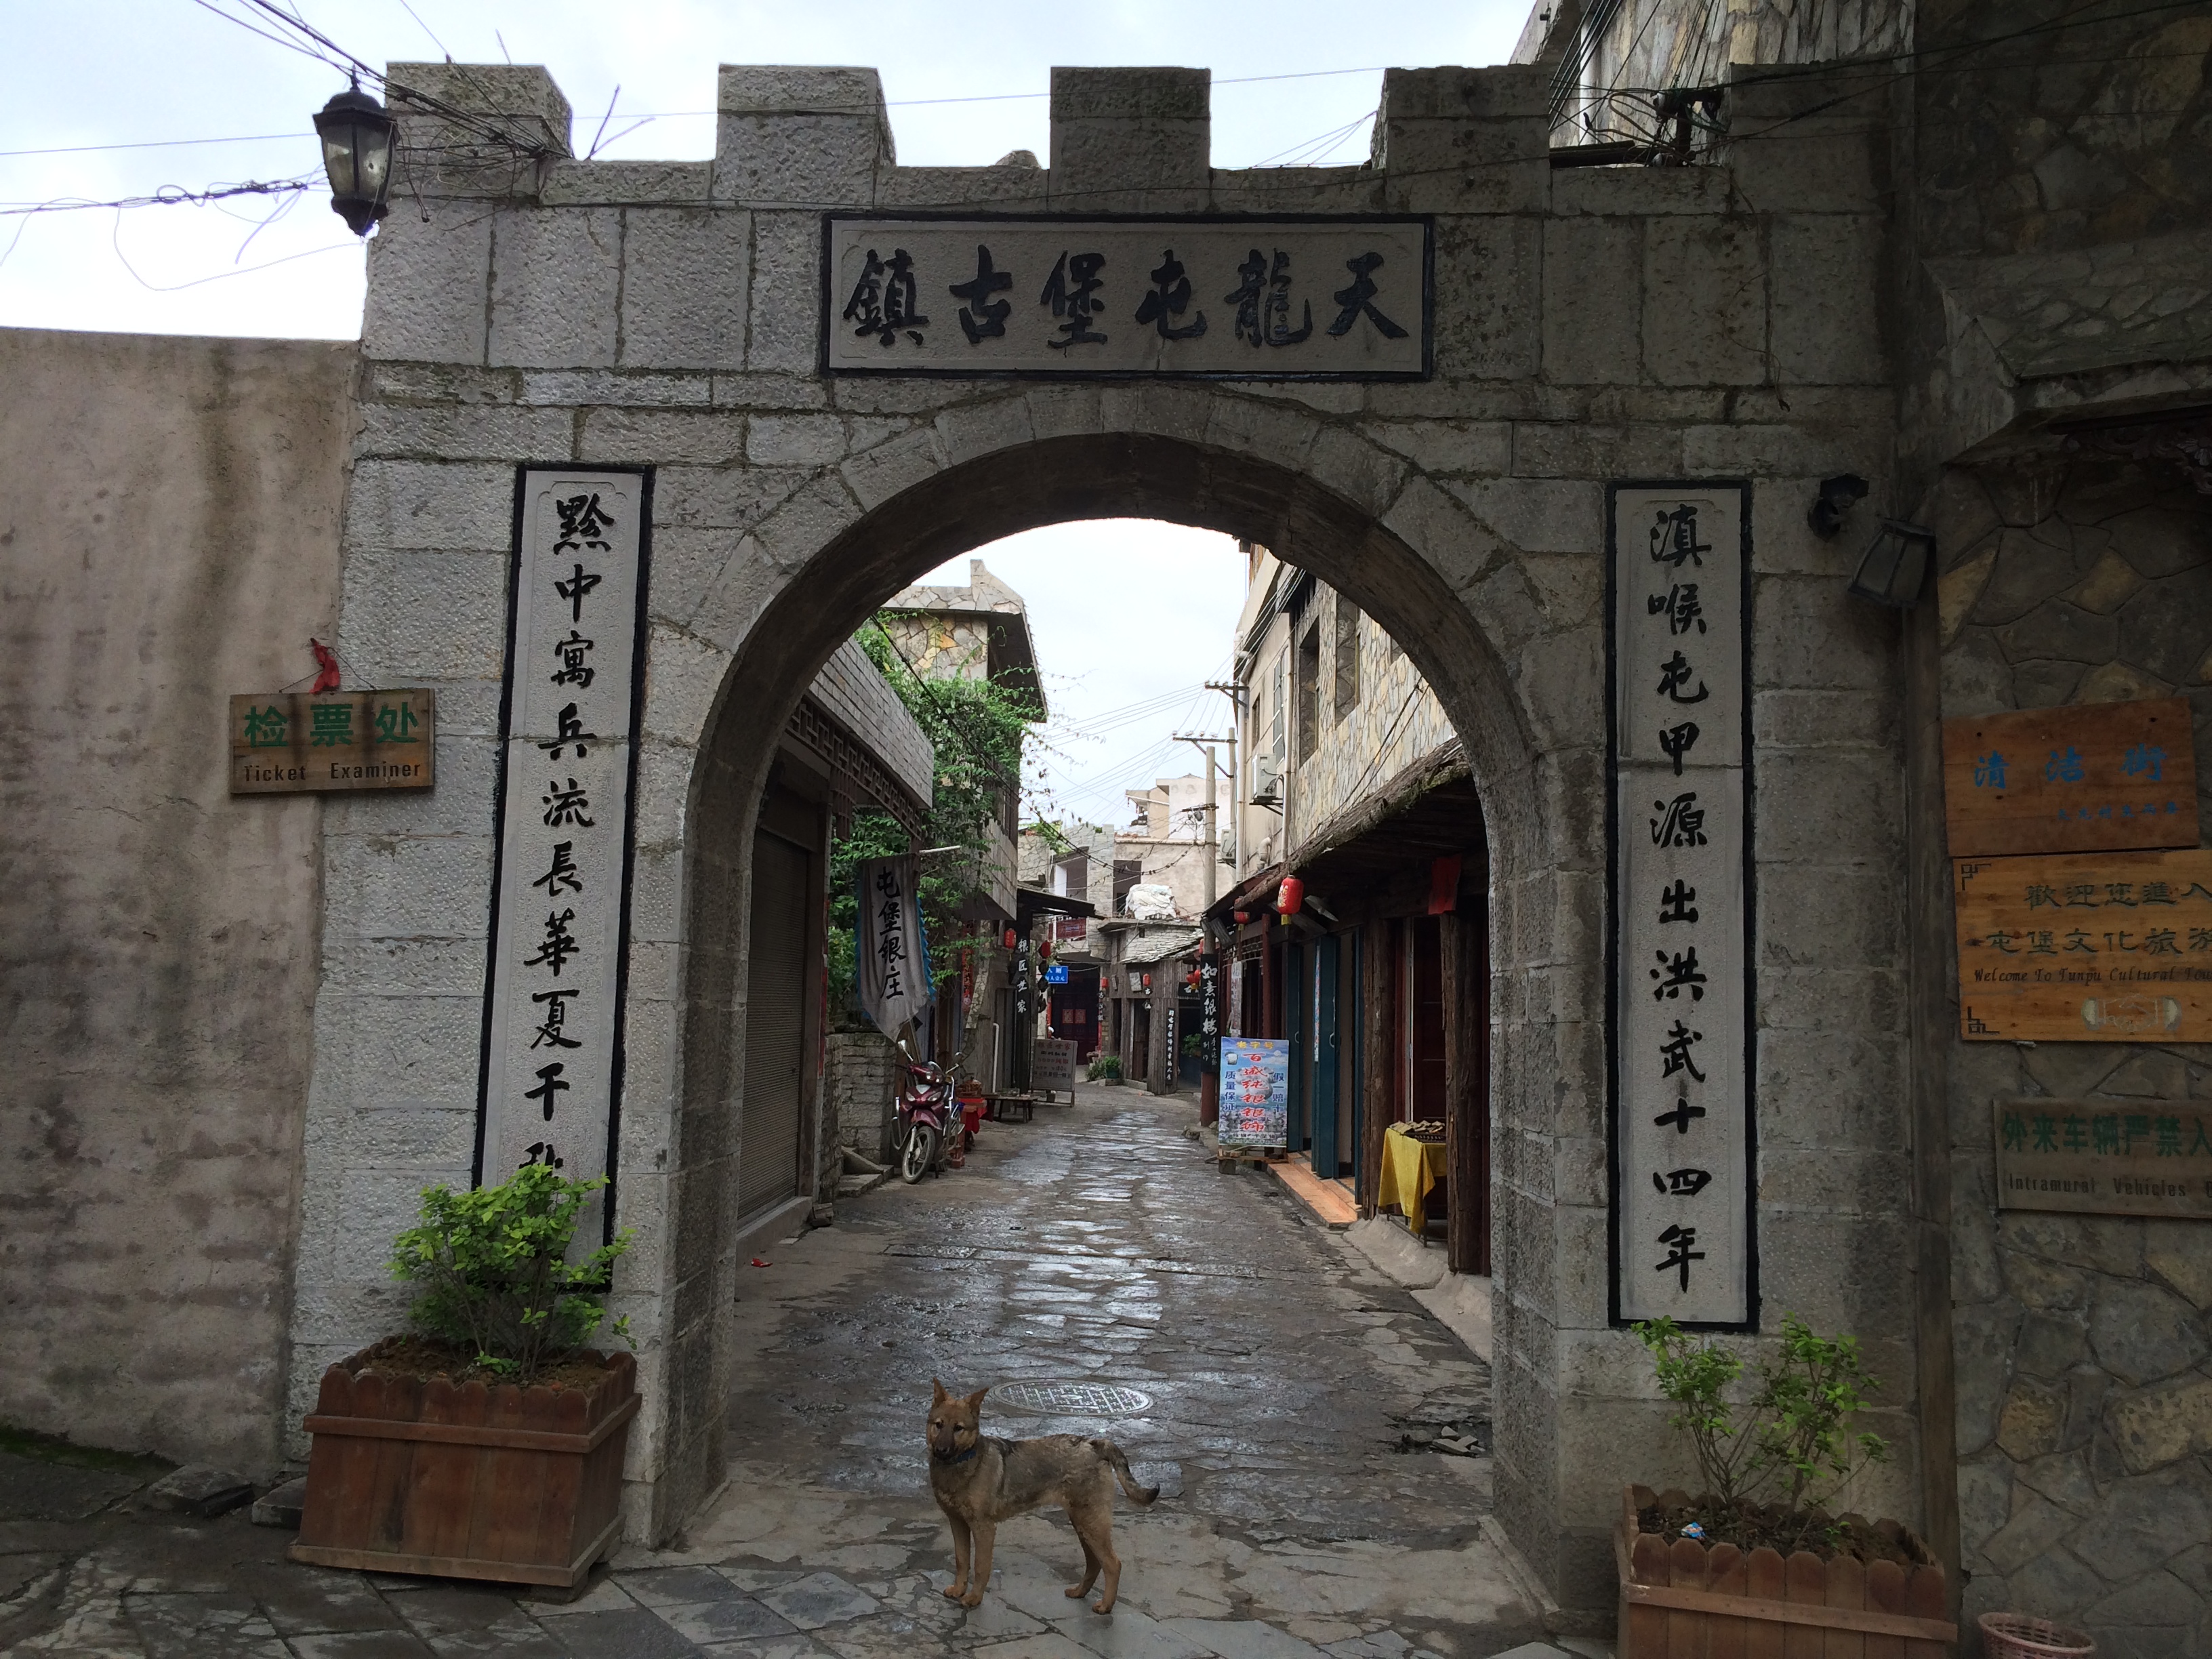 天龙屯堡古镇位于贵州省西部平坝县,喀斯特地貌大山深处